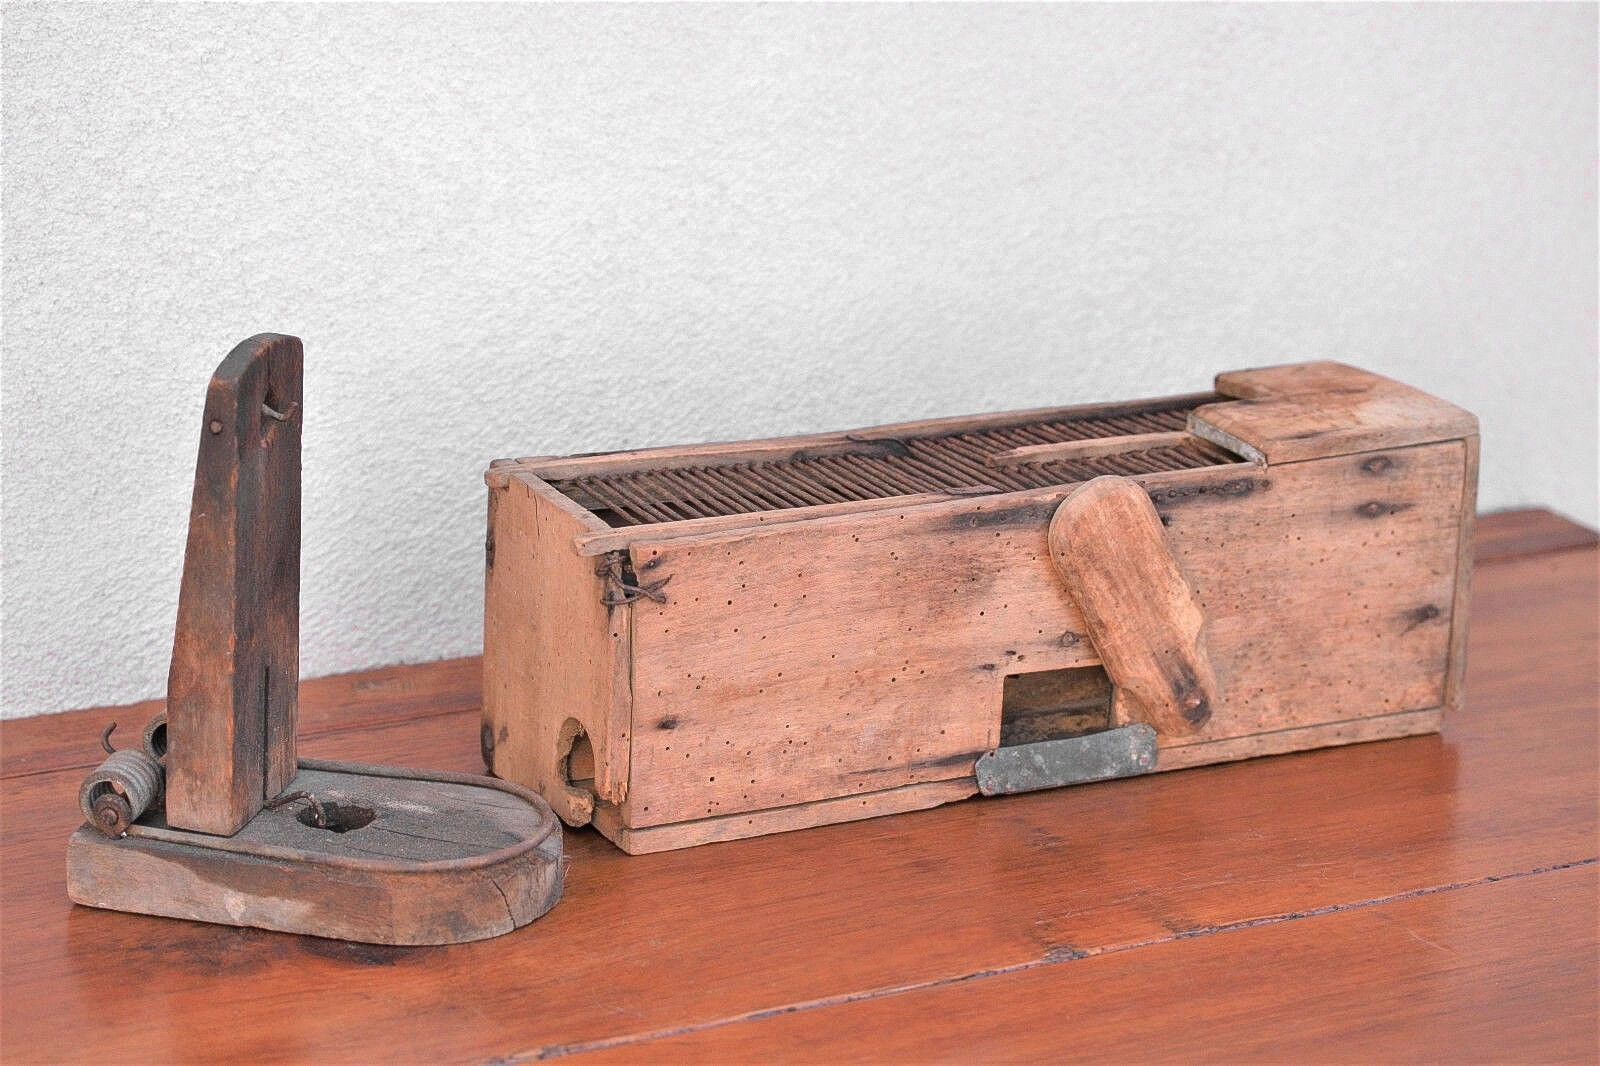 Antique Guillotine Mouse Trap - $1,000 Mousetrap - Mousetrap